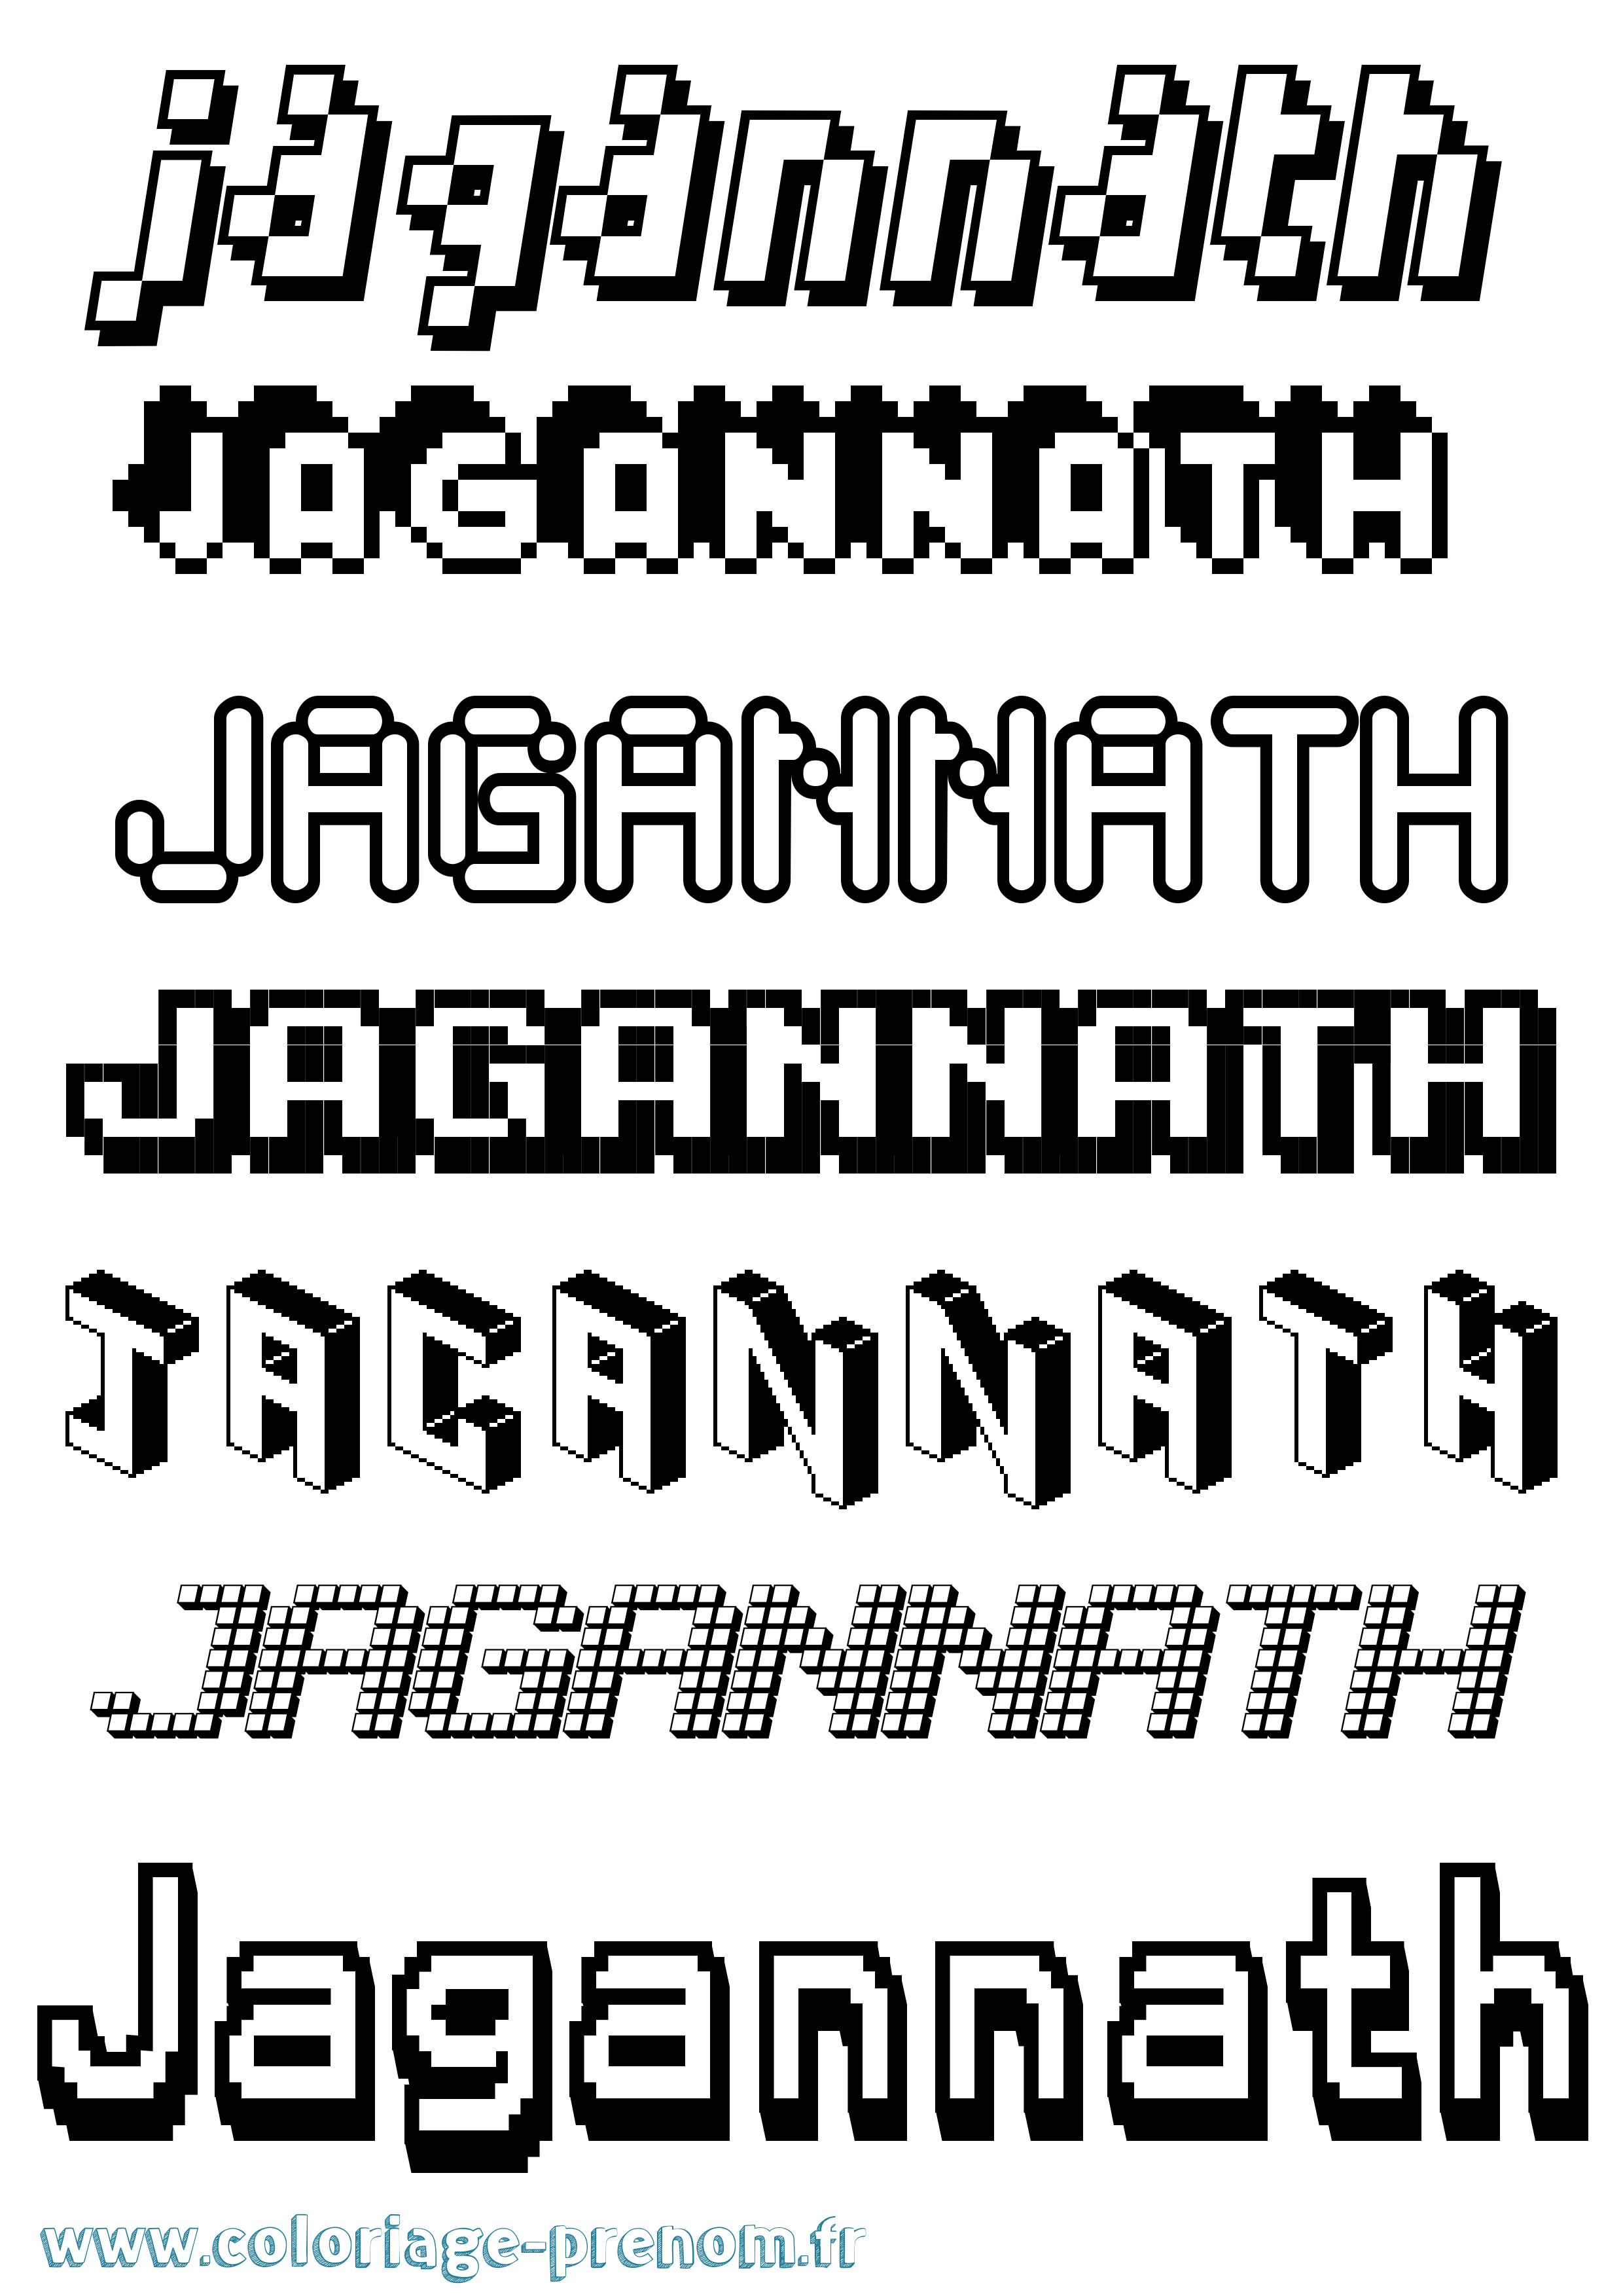 Coloriage prénom Jagannath Pixel